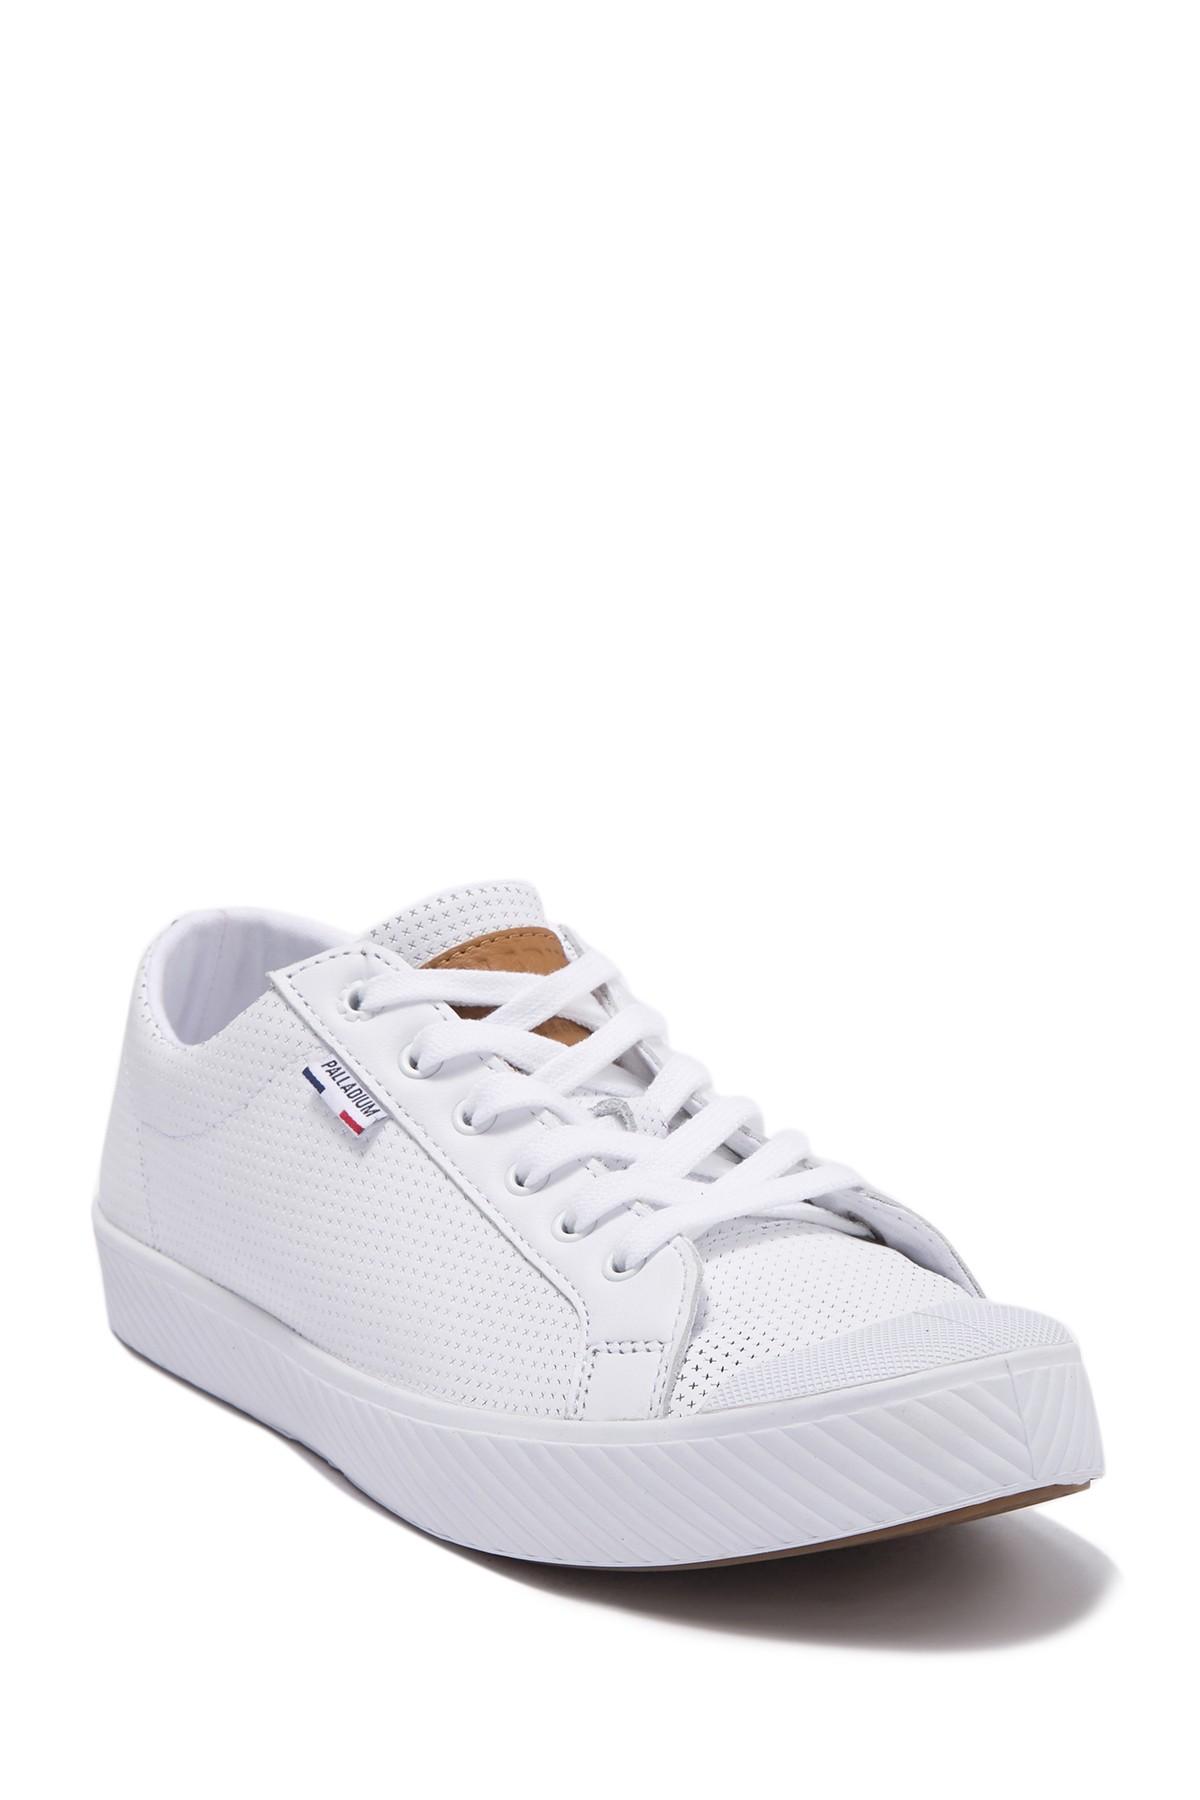 Palladium Palla Phoenix Og Leather Sneaker in White for Men - Lyst